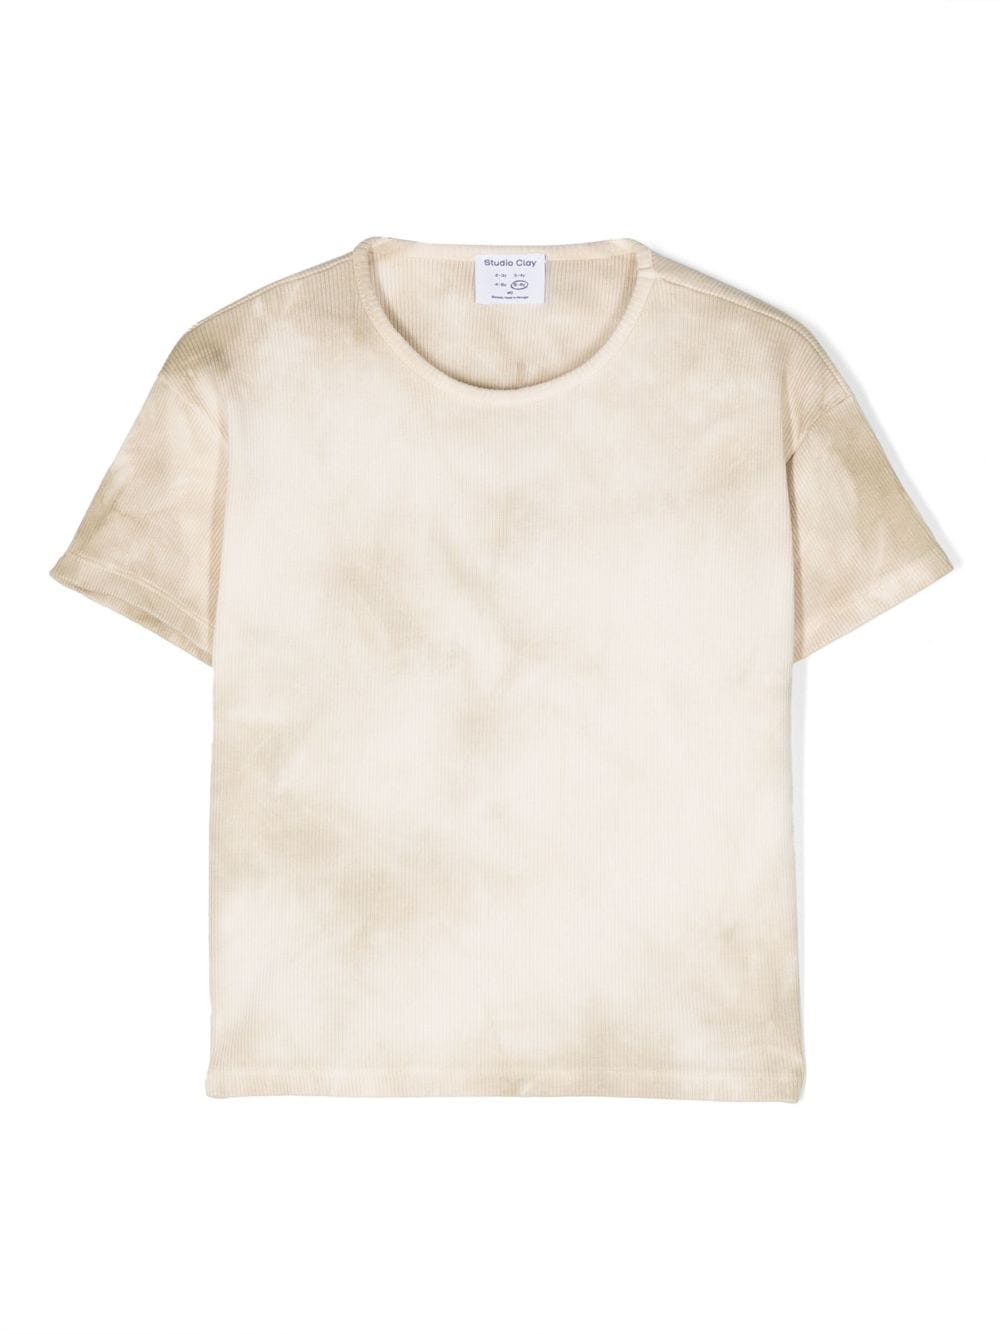 Studio Clay Benji organic cotton T-shirt - Neutrals von Studio Clay